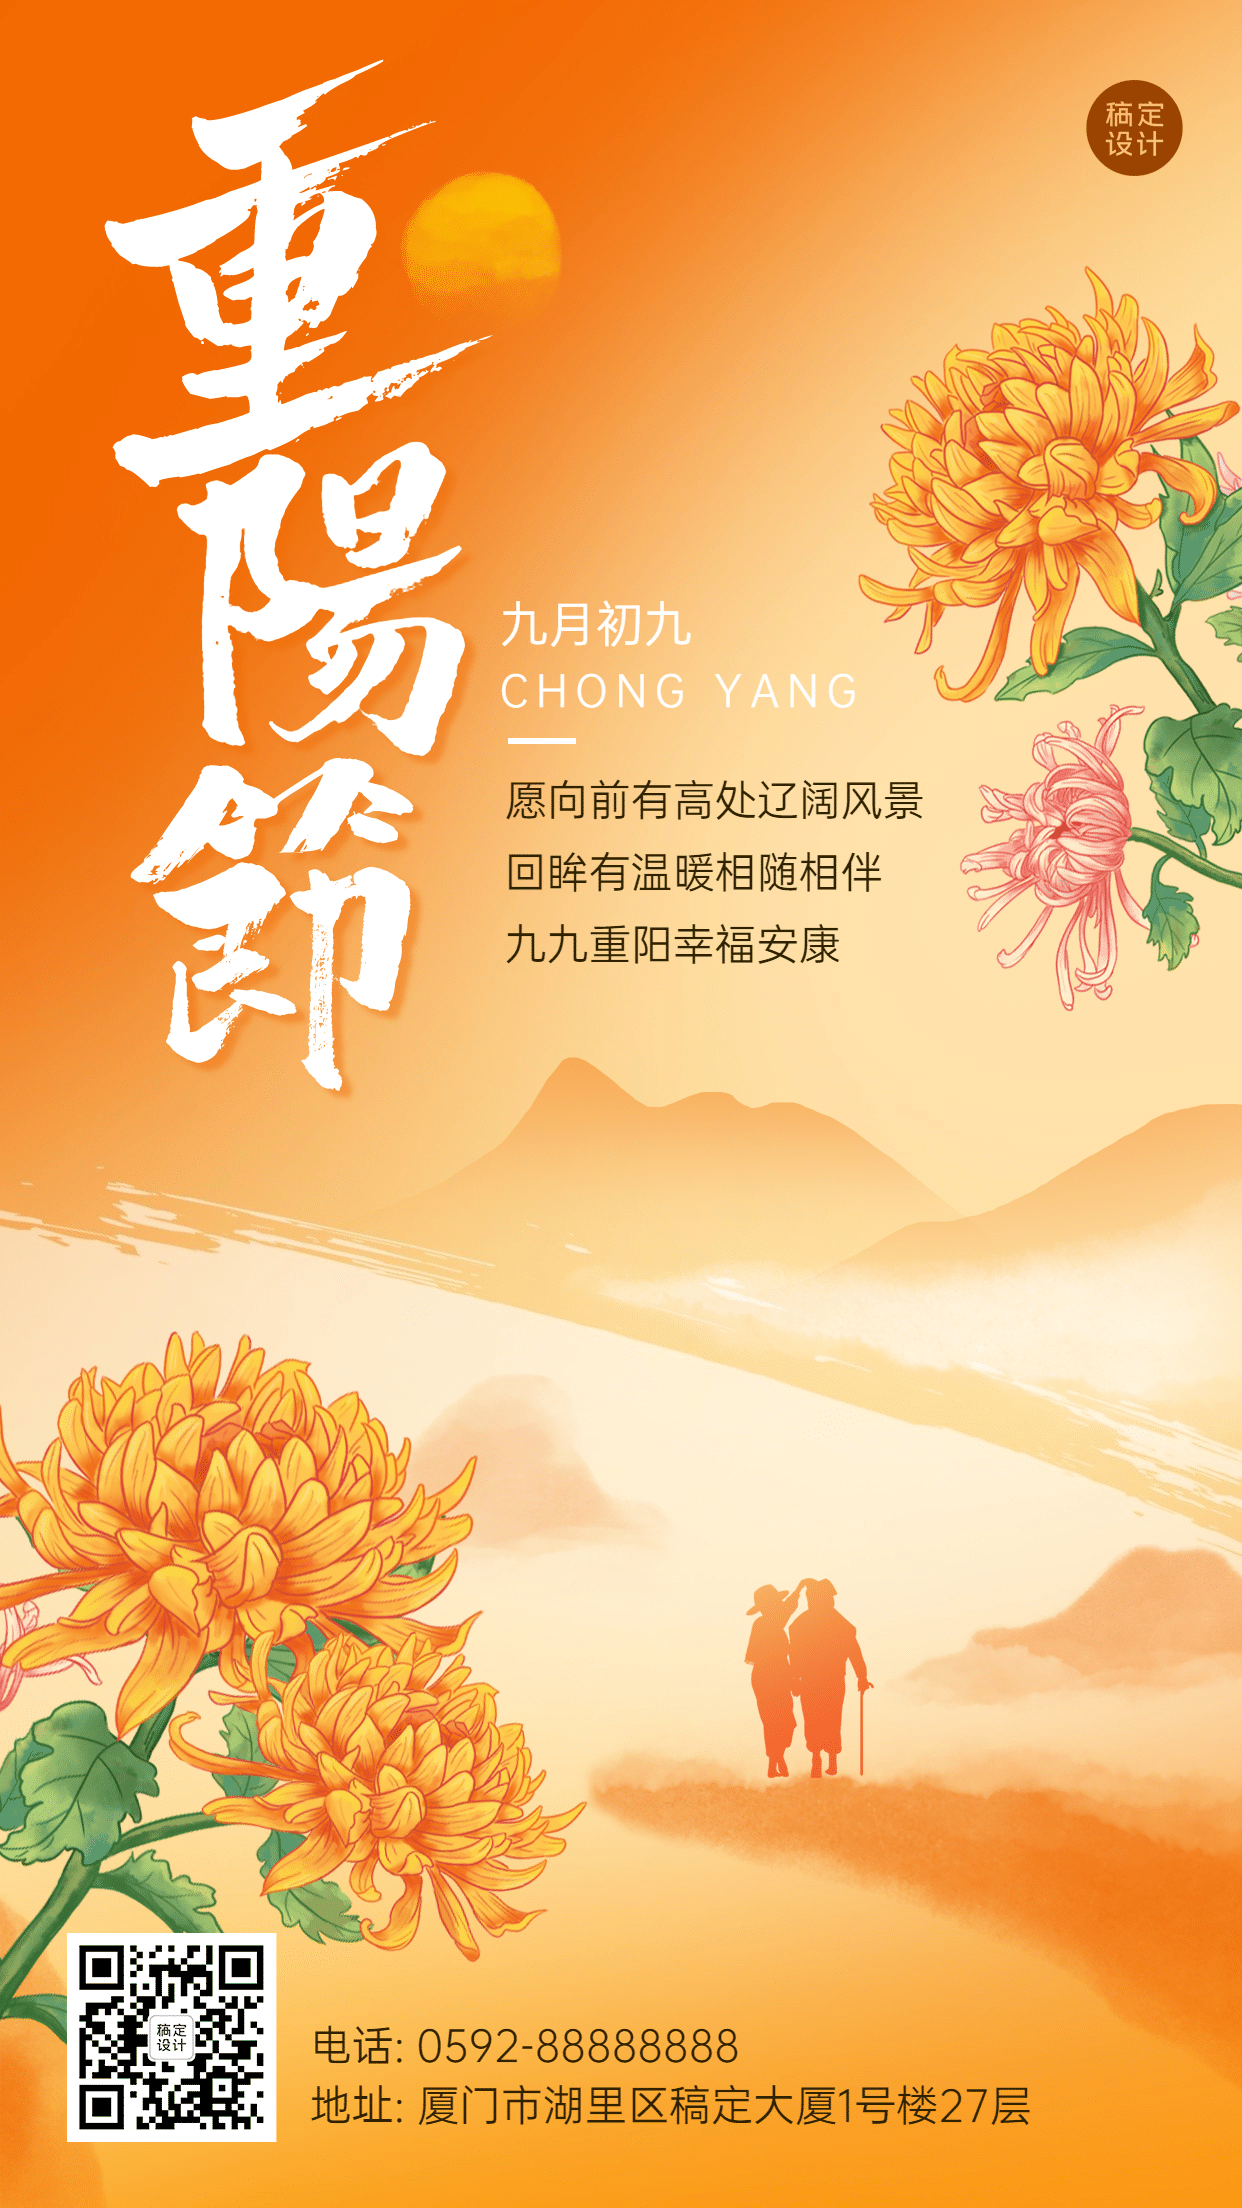 九九重阳节祝福人物剪影远山手绘海报预览效果